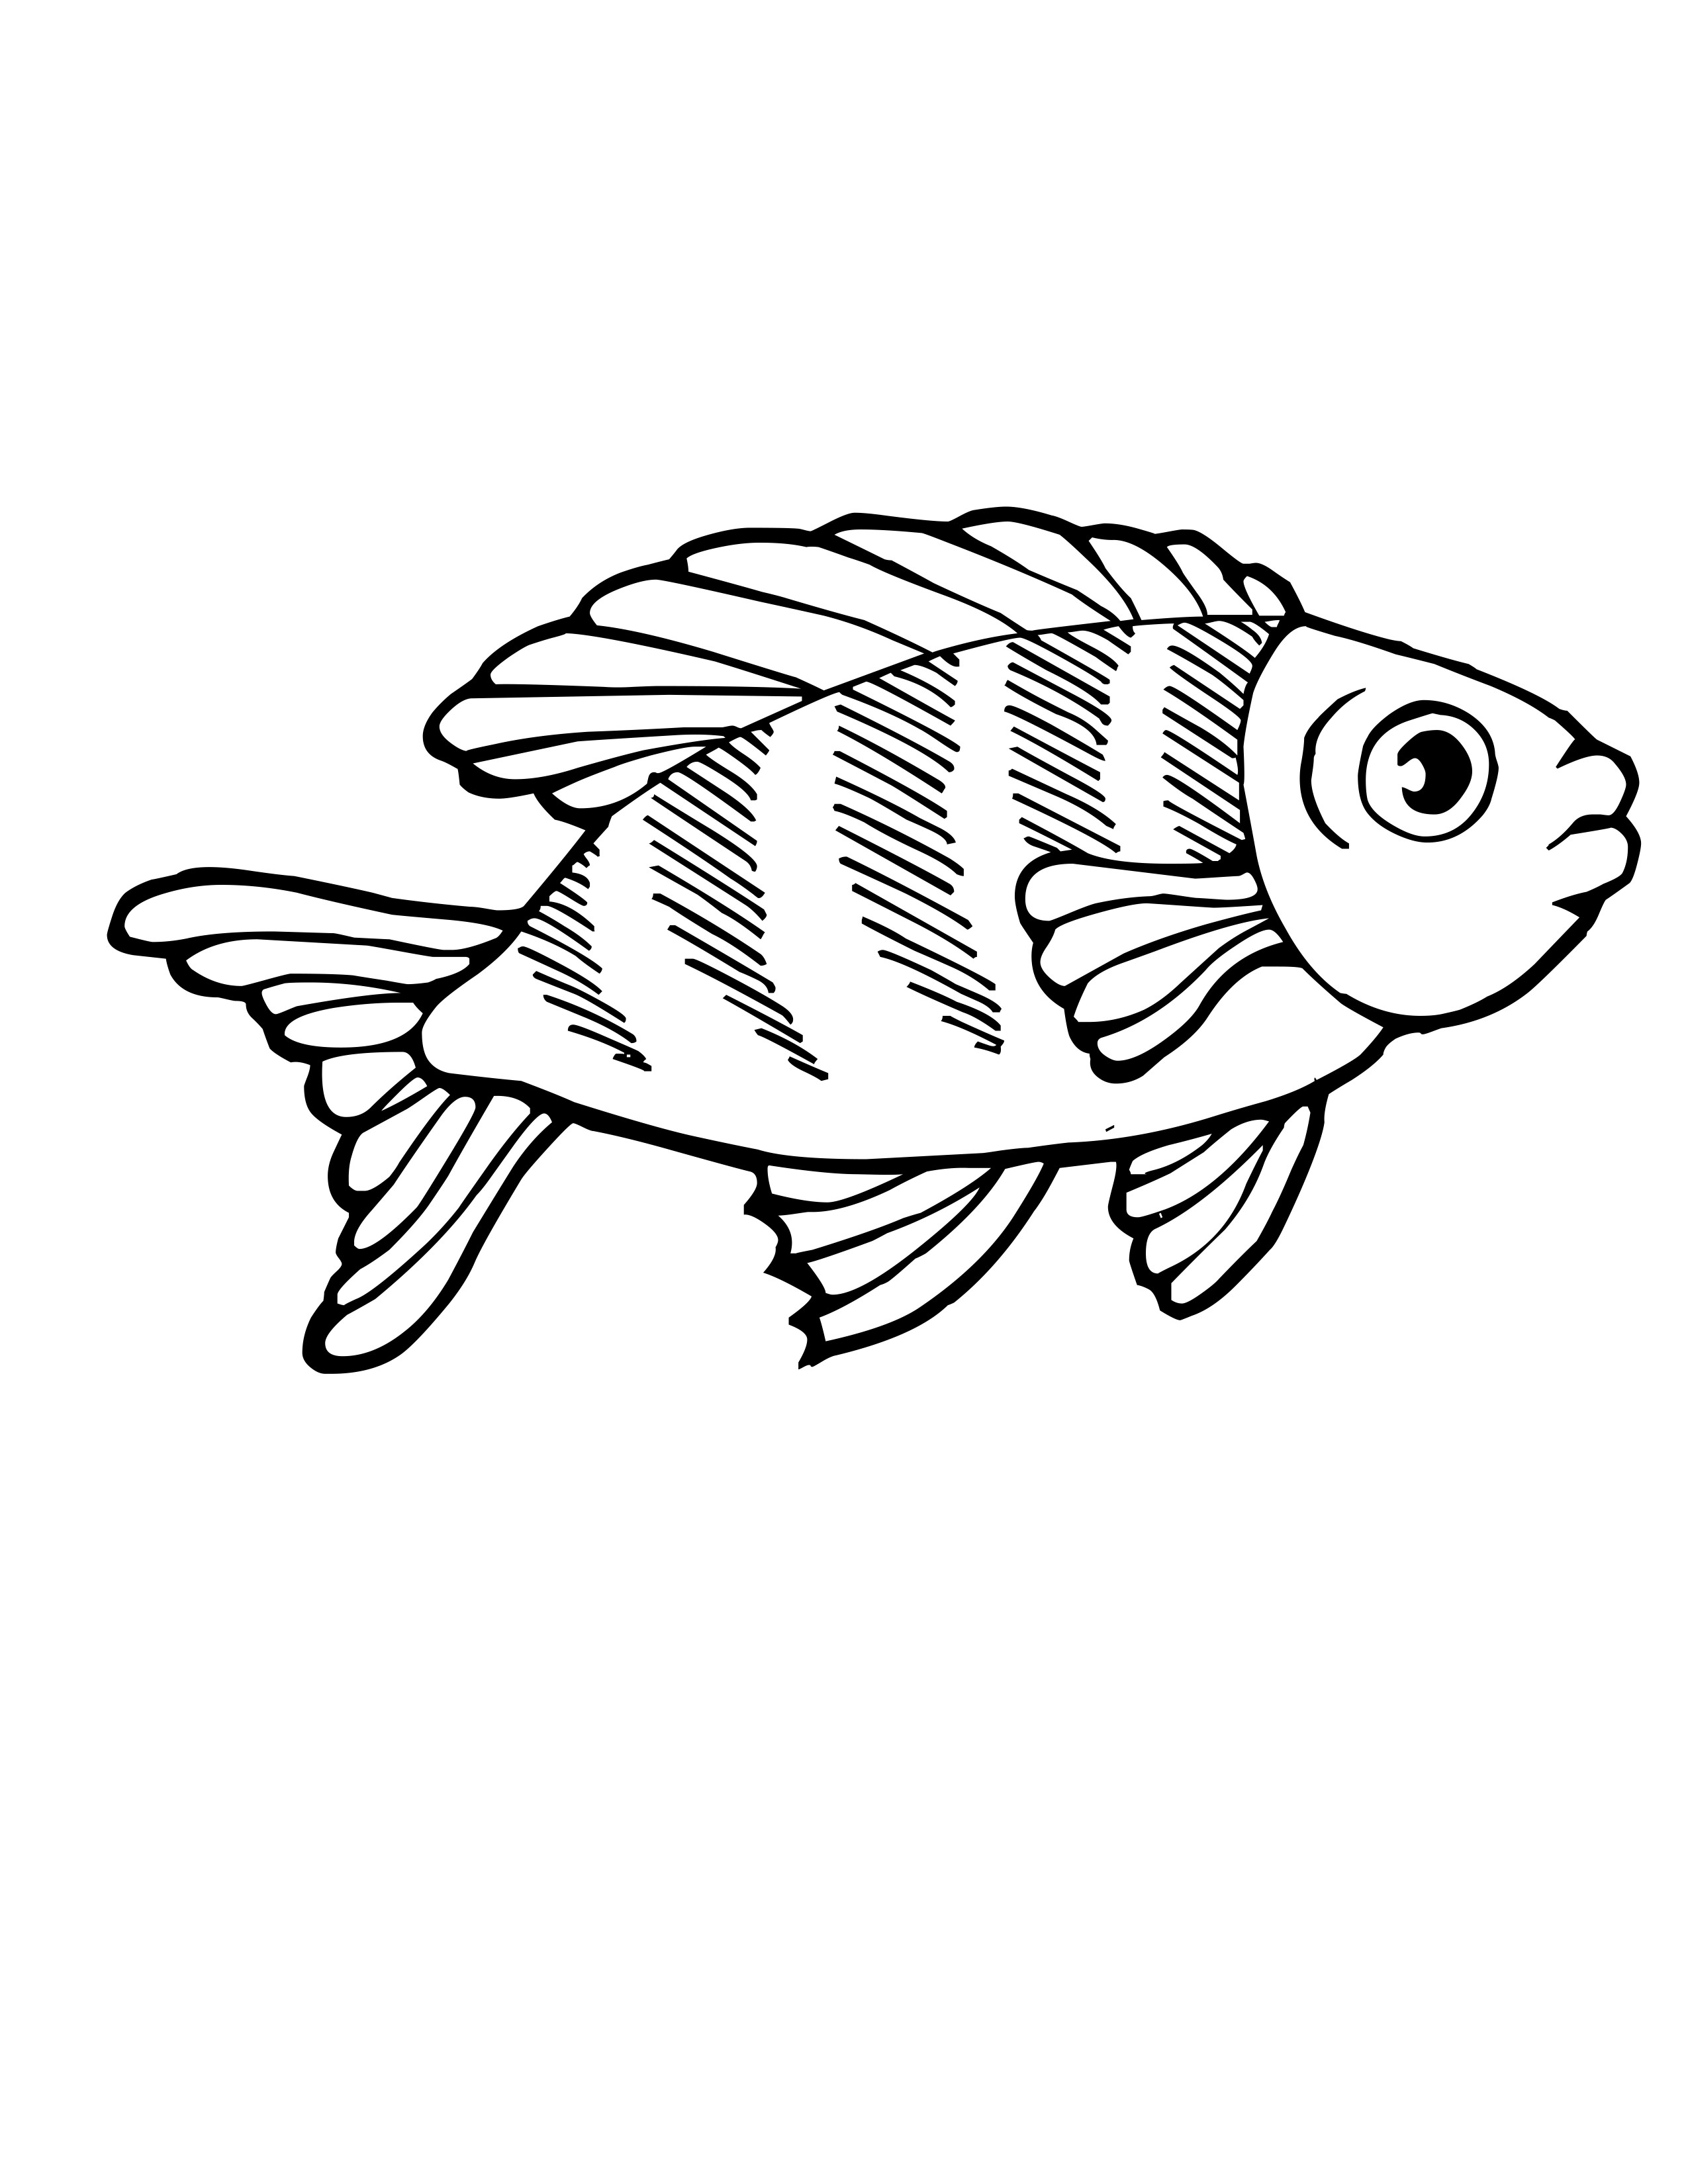 Dessin de poisson gratuit à imprimer et colorier